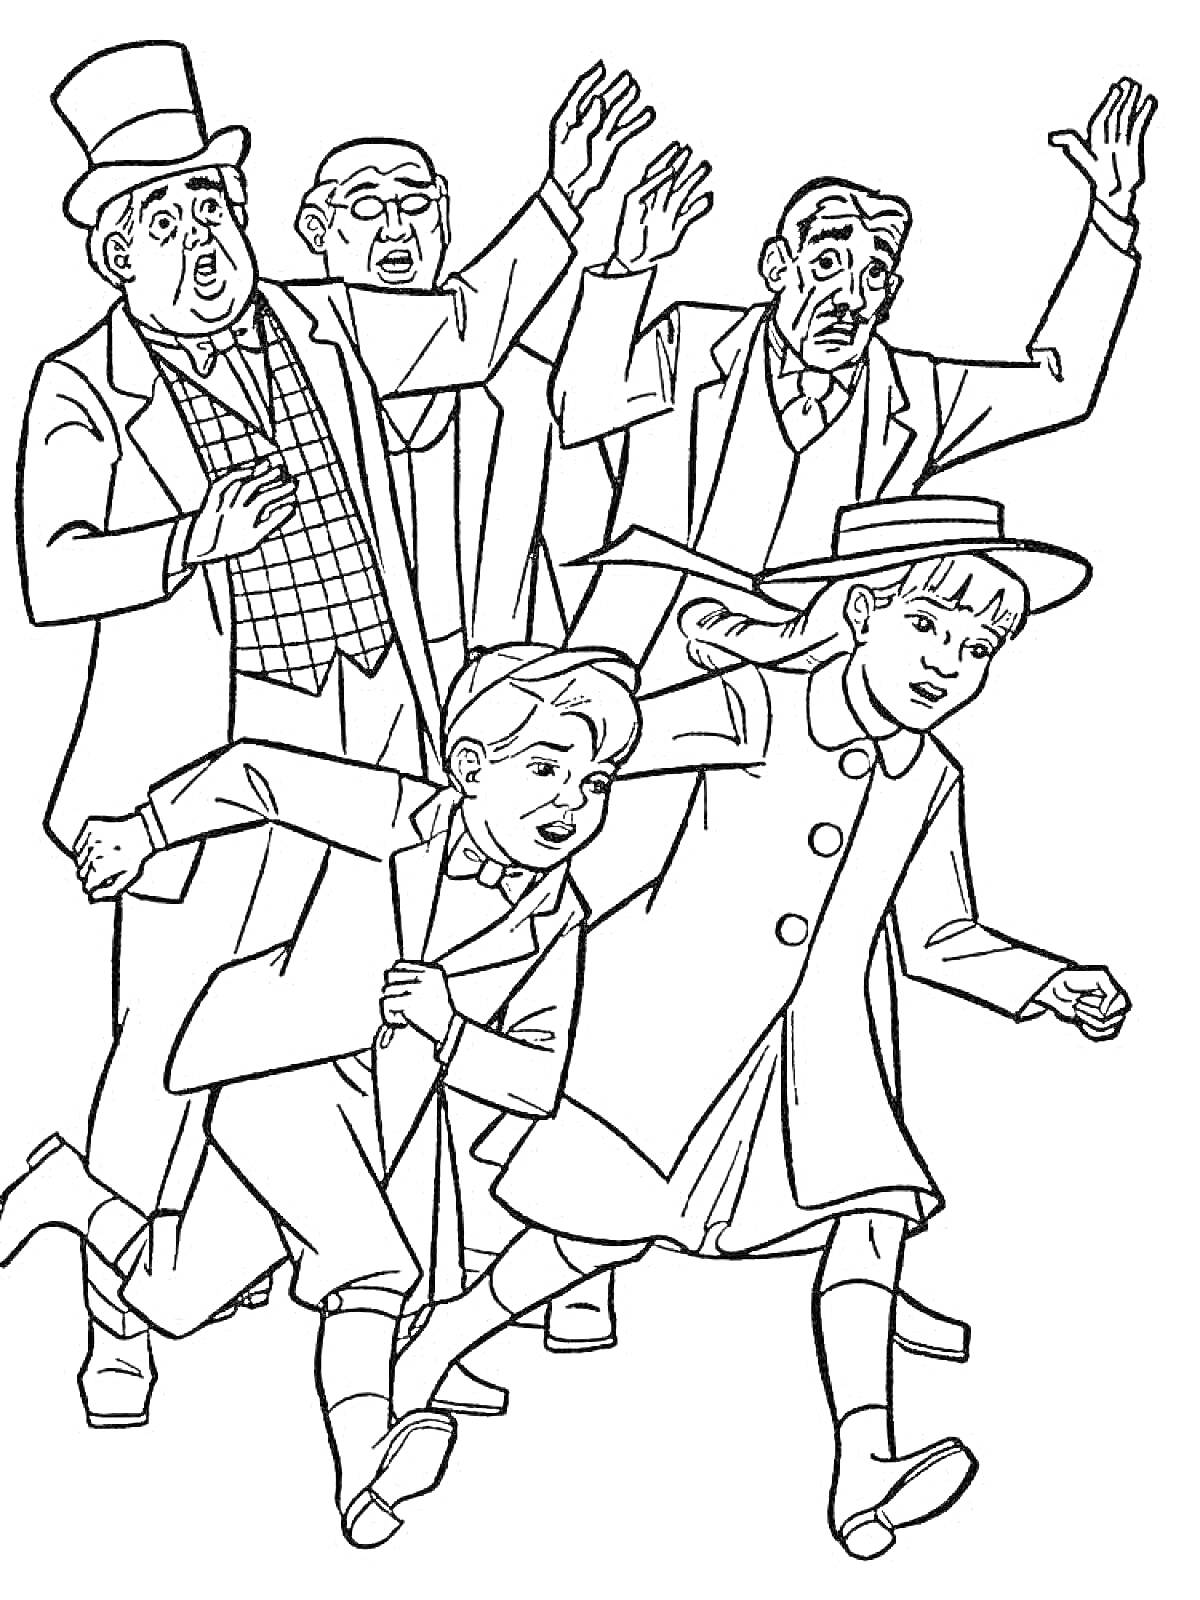 Раскраска Группа людей в одежде начала 20 века, один человек в цилиндре, еще трое мужчин, двое детей в длинных плащах, девочка в шляпе ведет за руку мальчика